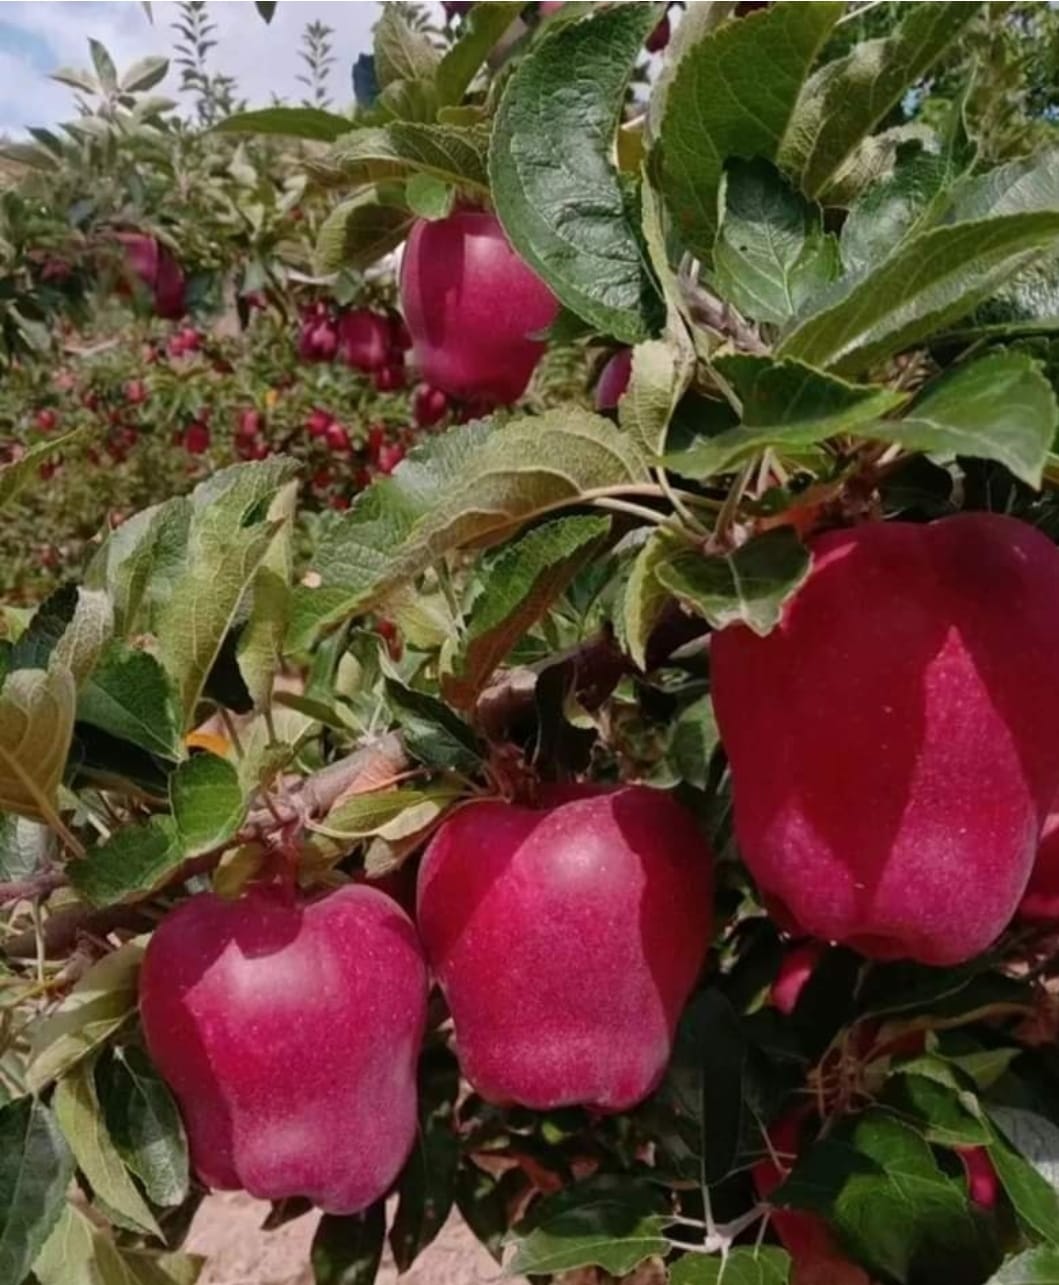 हिमाचल में साढ़े चार हजार करोड़ की आर्थिकी सेब की है